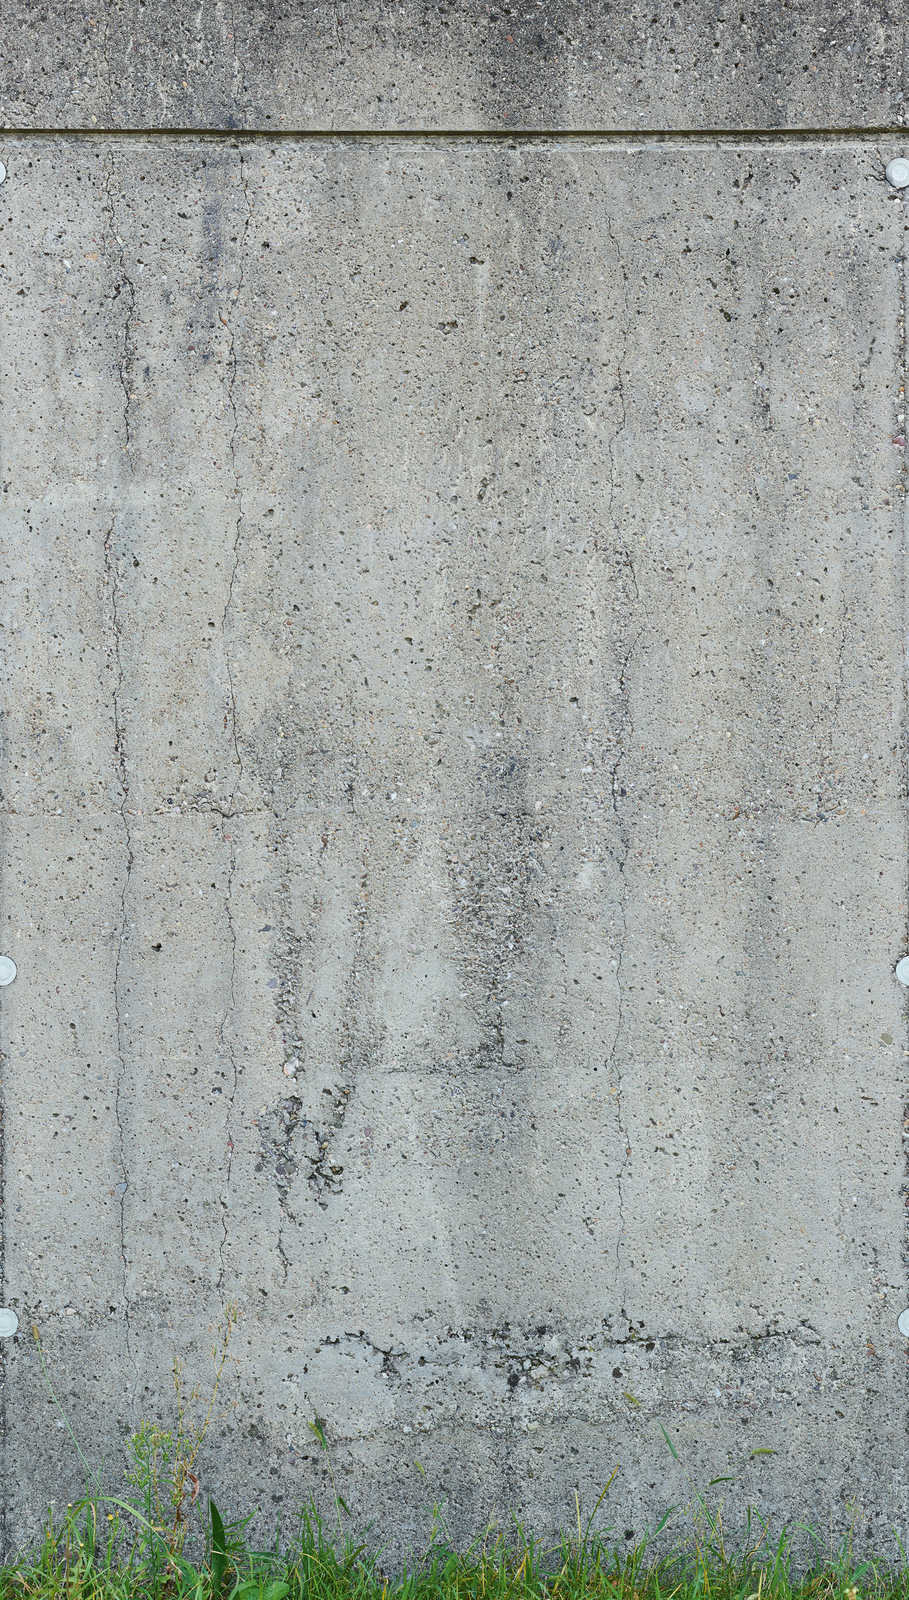             Onderlaag behang met stenen muur optiek en gras - grijs, groen
        